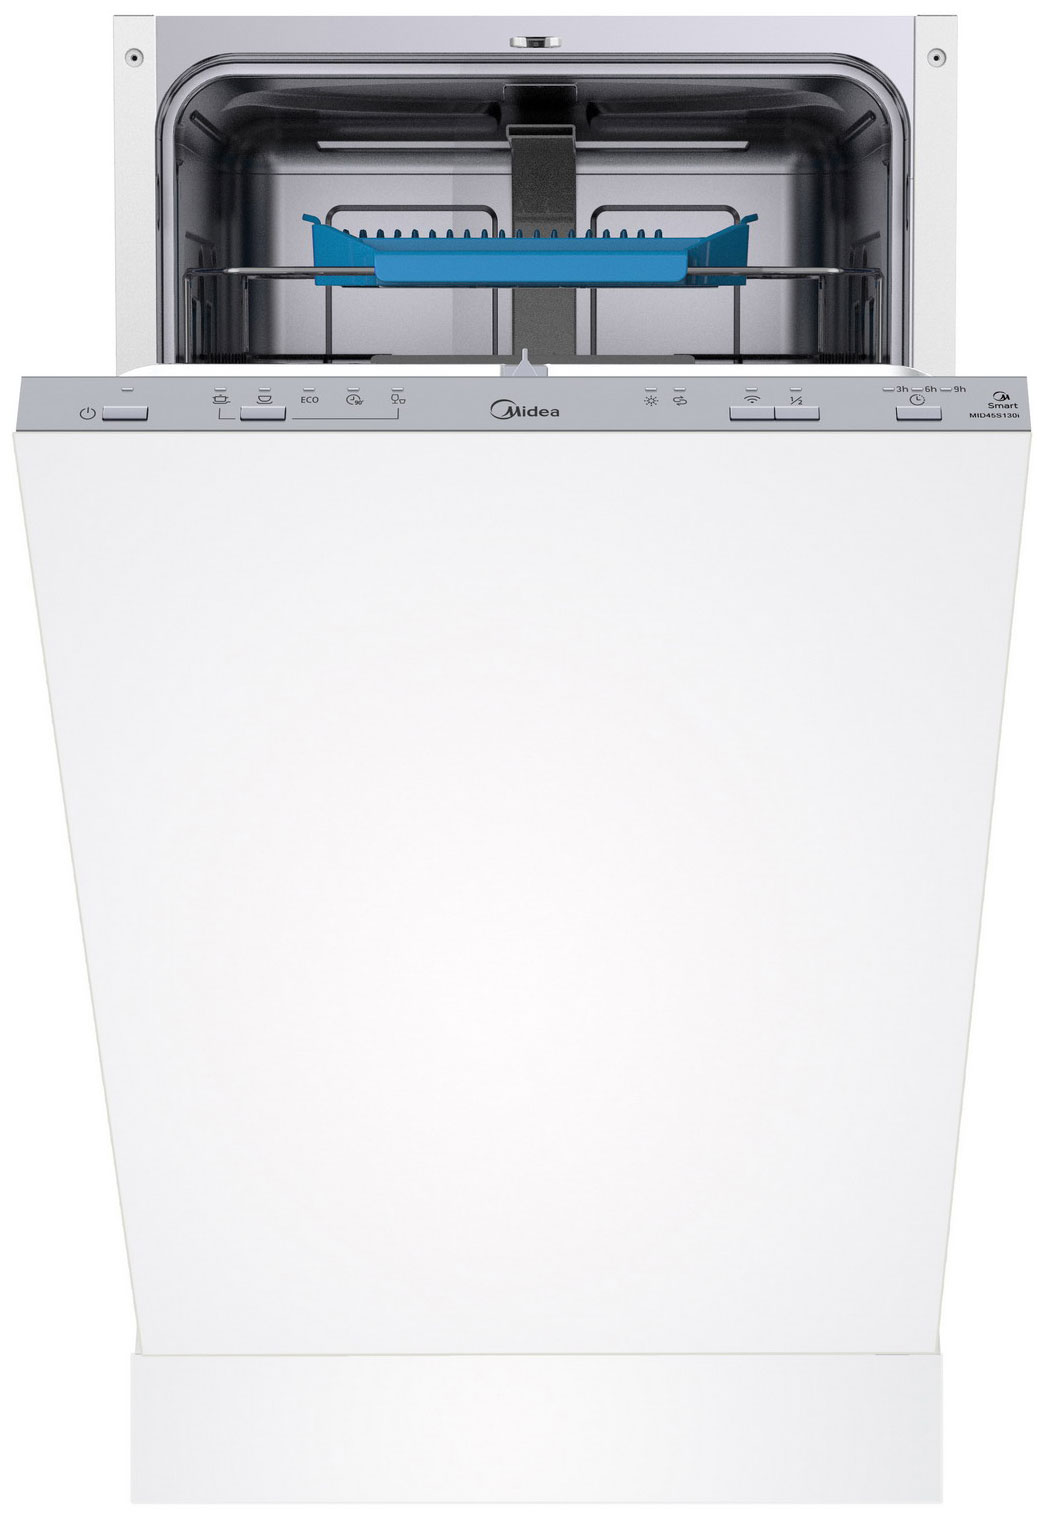 Встраиваемая посудомоечная машина Midea MID45S130i встраиваемая посудомоечная машина midea mid45s340i